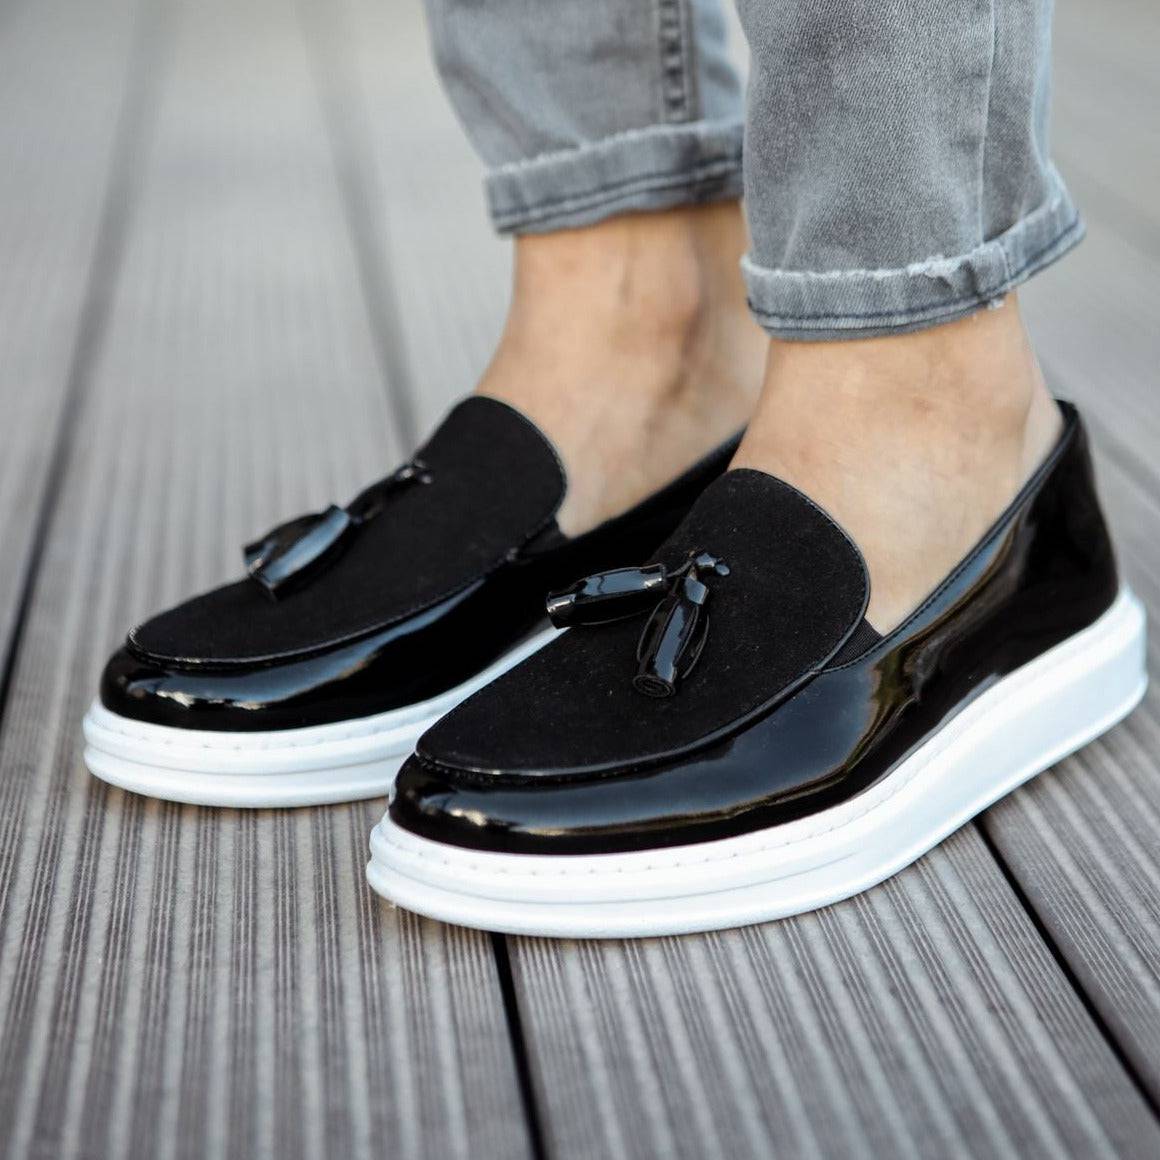 Primitiv farvning Banzai Casual Loafers for Men by Apollo | Roma in Patent Black & White – Apollo  Moda